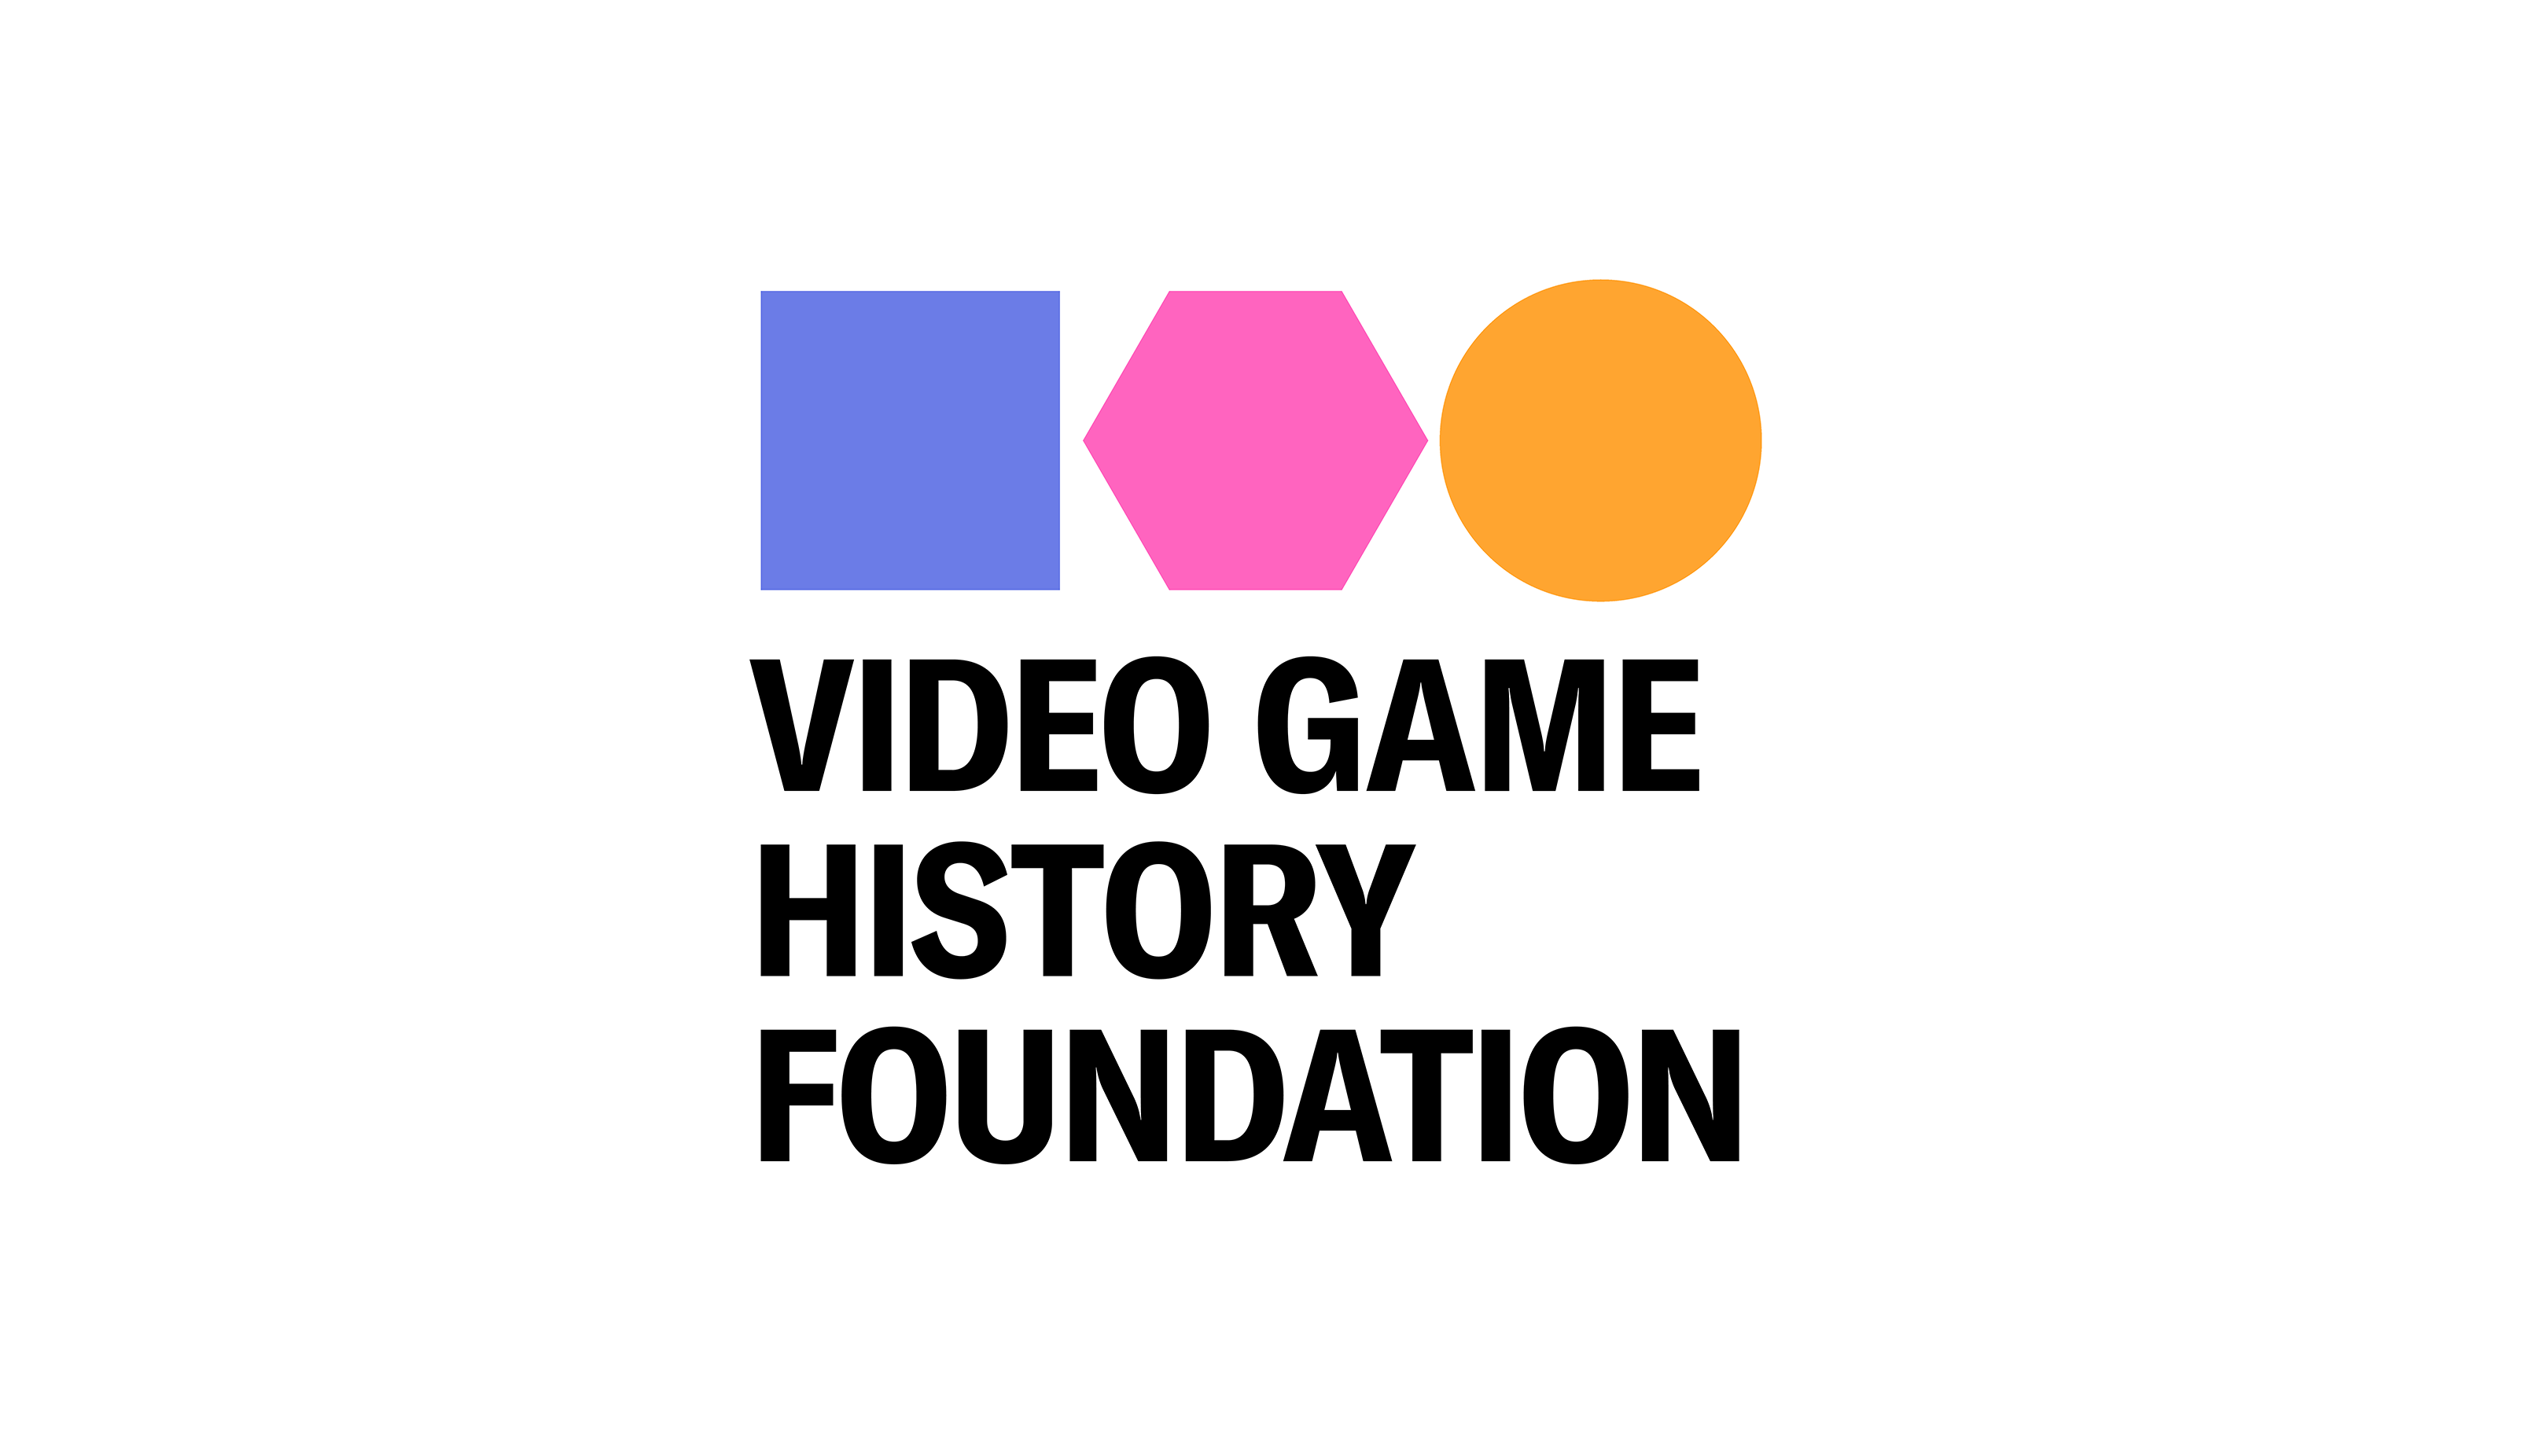 Nếu bạn là một fan trung thành của video game thì không thể bỏ qua chủ đề video game history. Hãy cùng tìm hiểu lịch sử và phát triển của video game thông qua những bức hình bắt đầu từ first video game history.